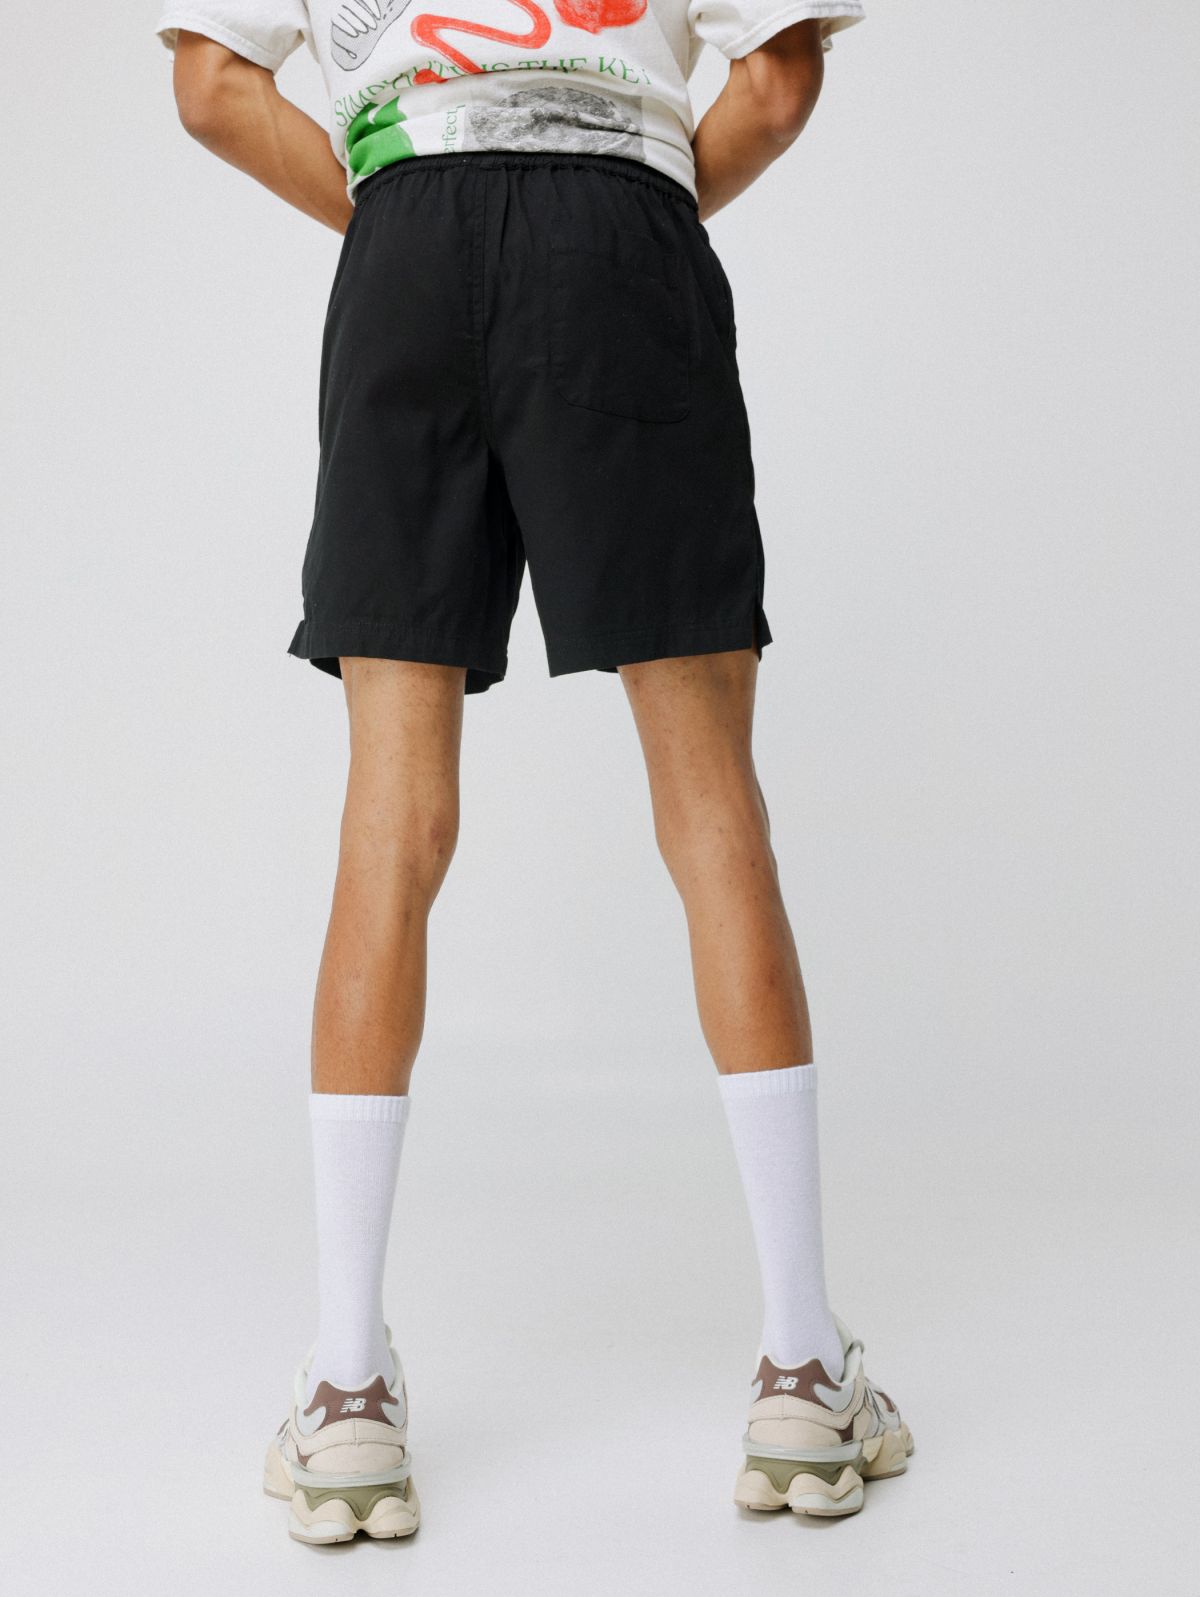  מכנסיים קצרים עם לוגו של URBAN OUTFITTERS